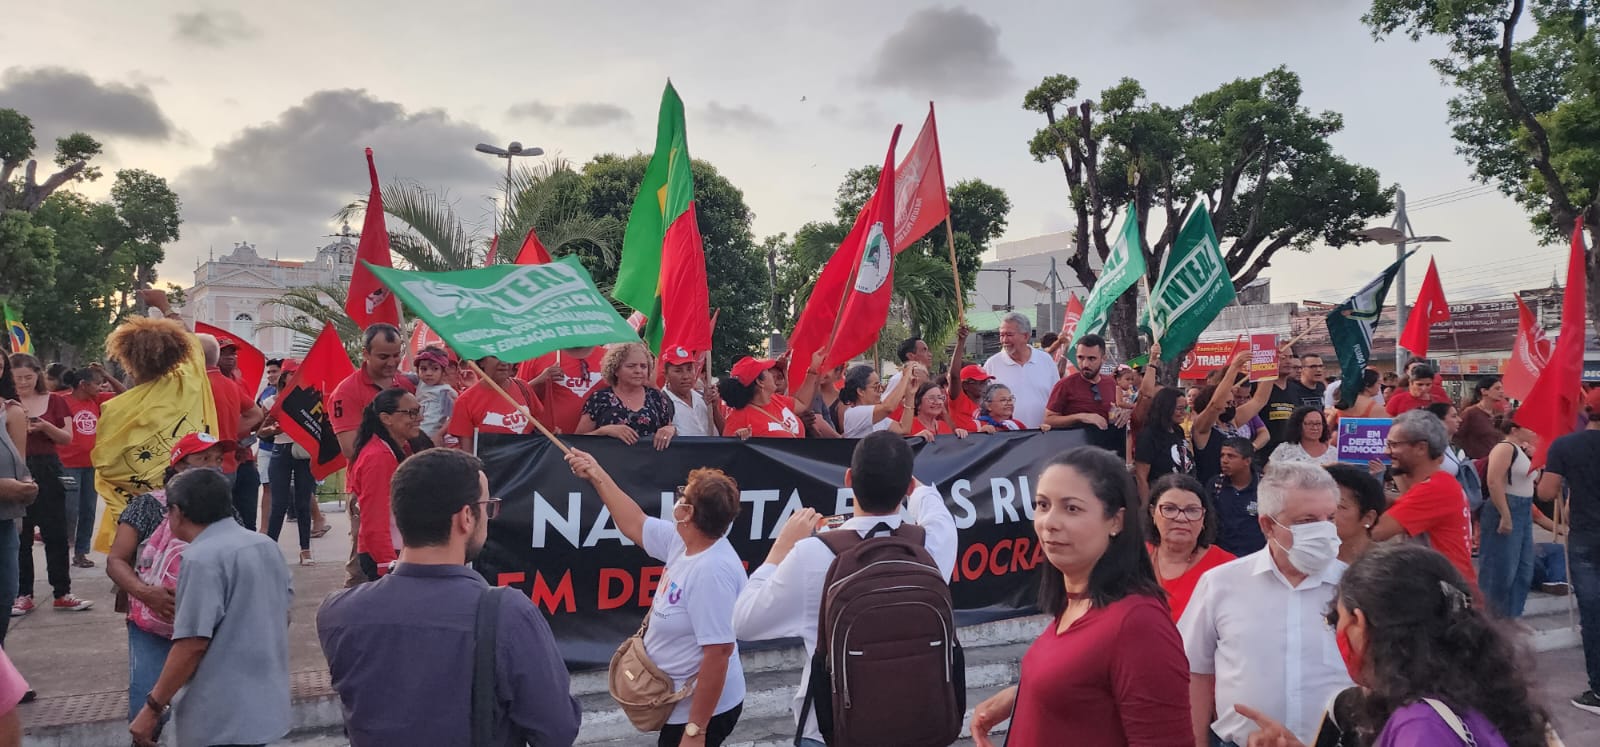 Movimentos sociais realizam ato público contra as ações golpistas e antidemocráticas de bolsonaristas